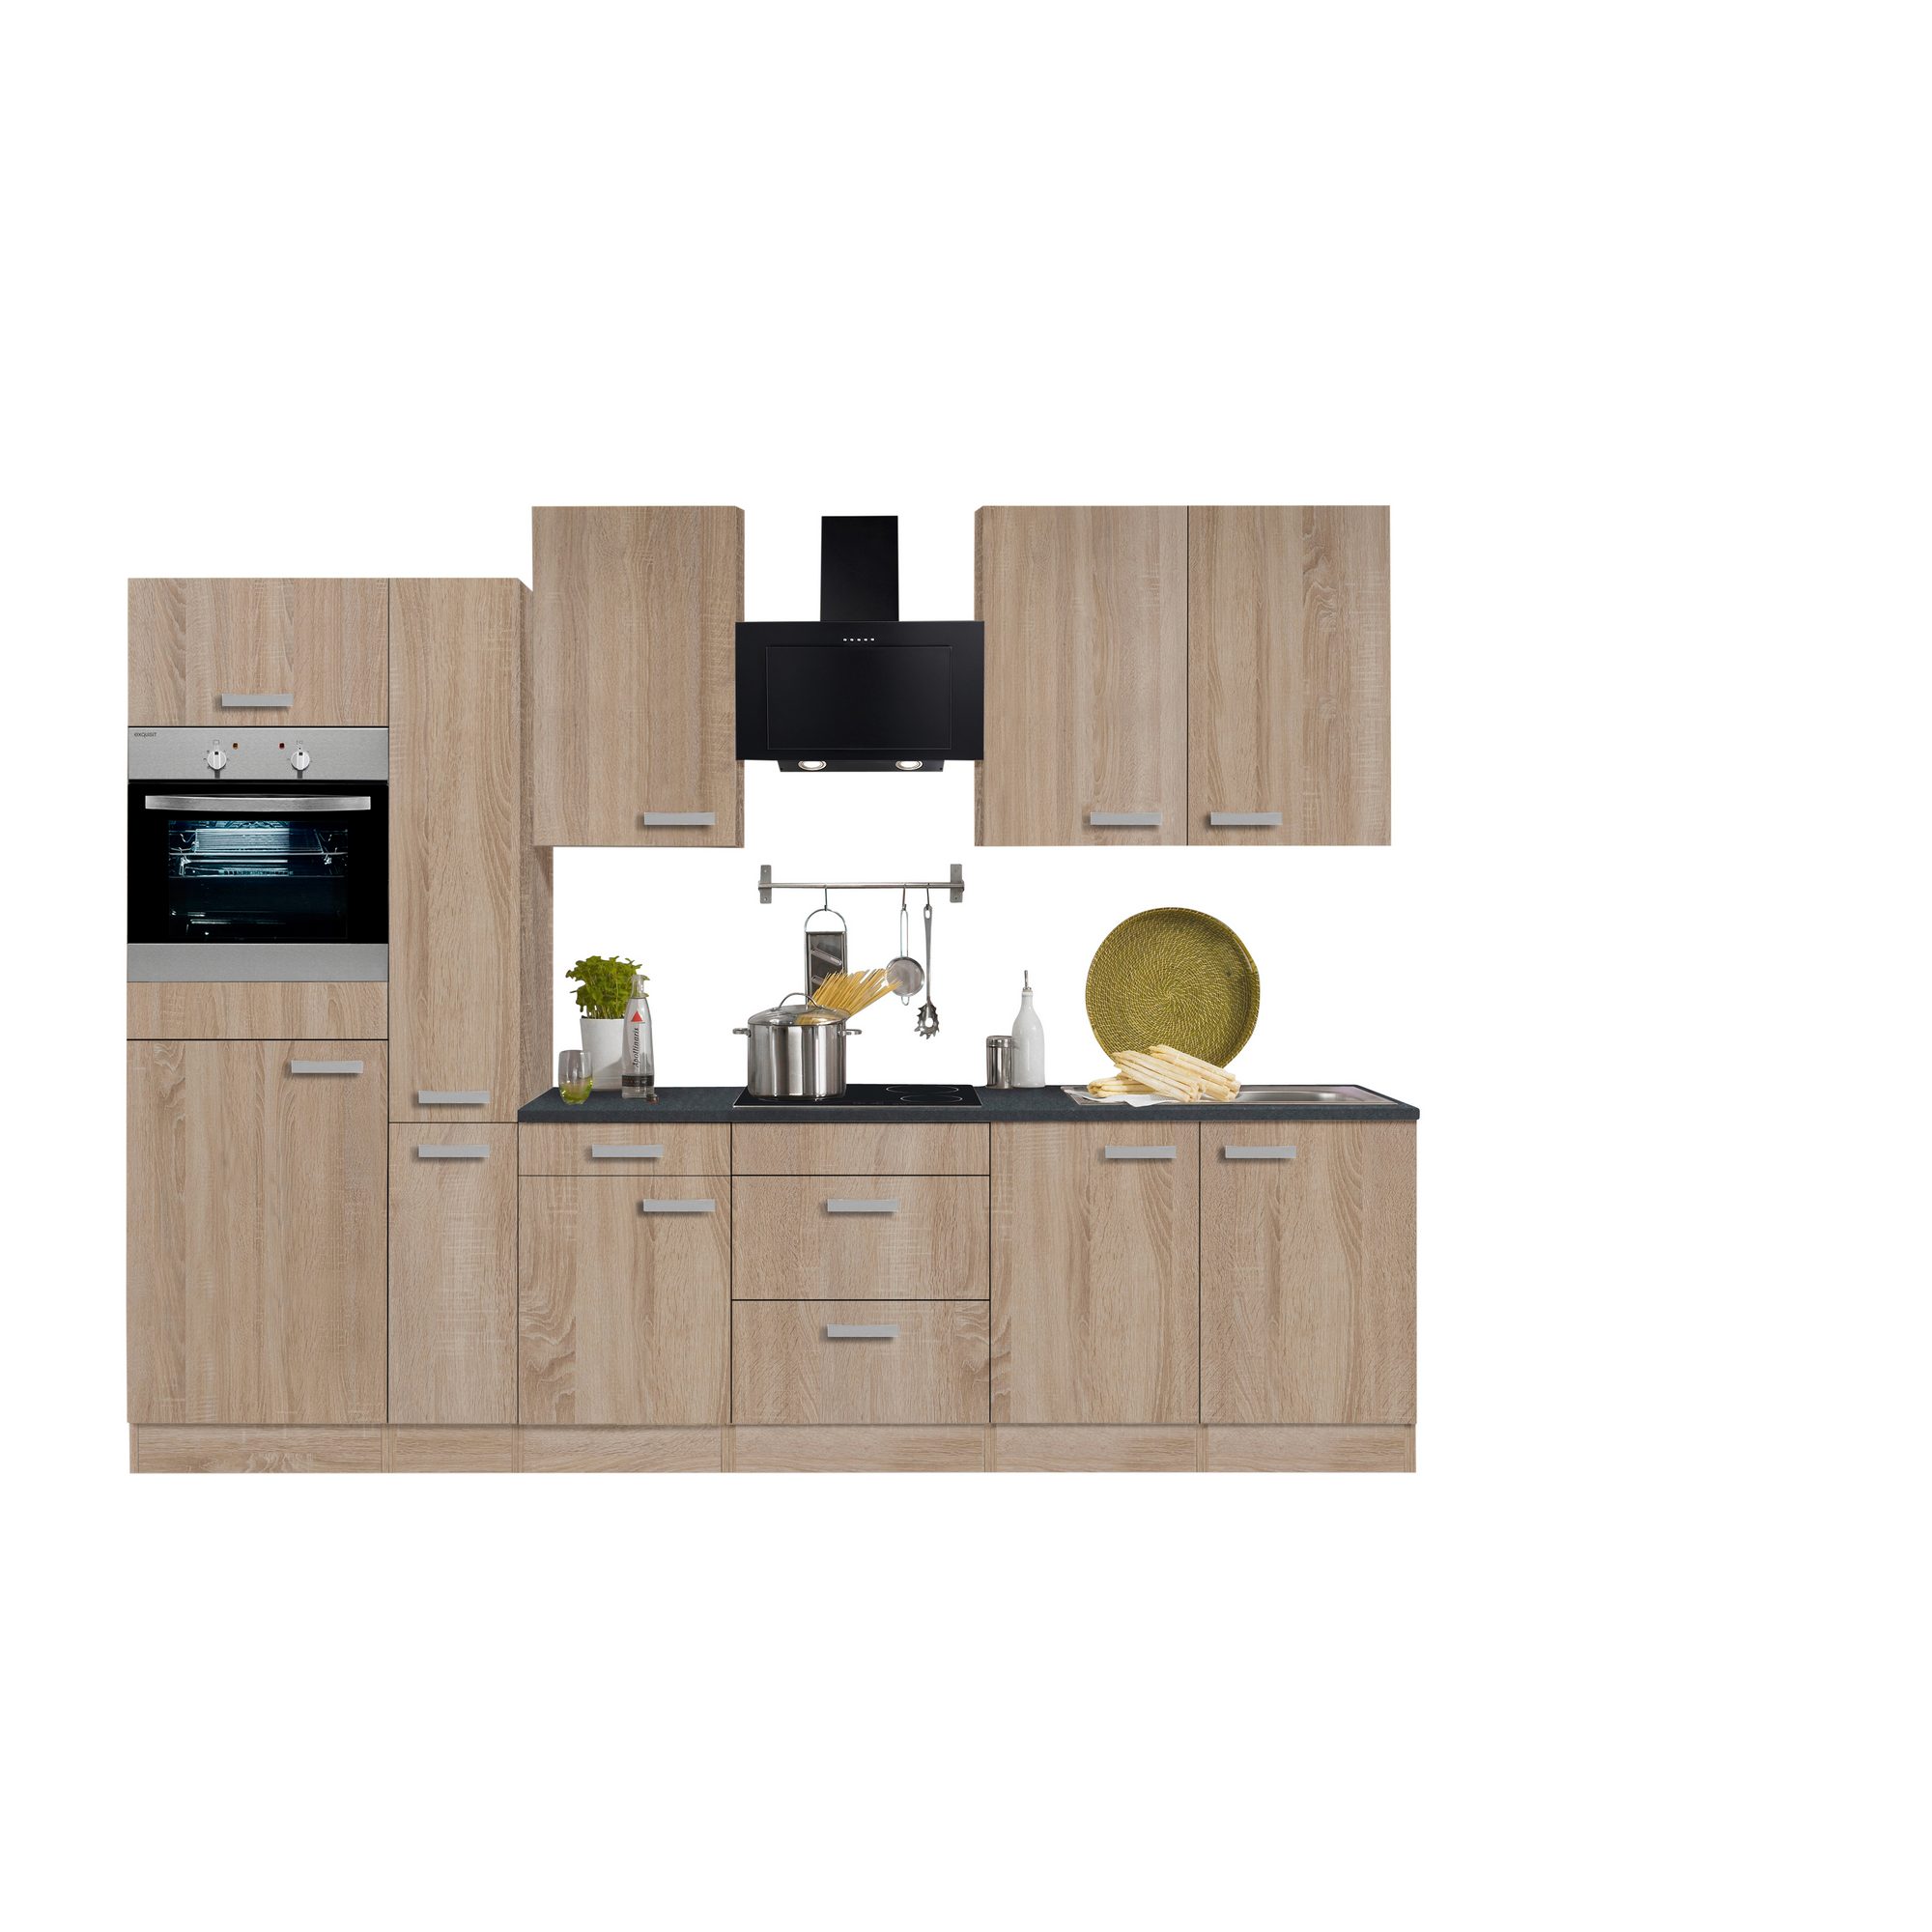 Küchenzeile mit E-Geräten 'OPTIkompakt Monza' eichefarben/anthrazit 300 cm + product picture